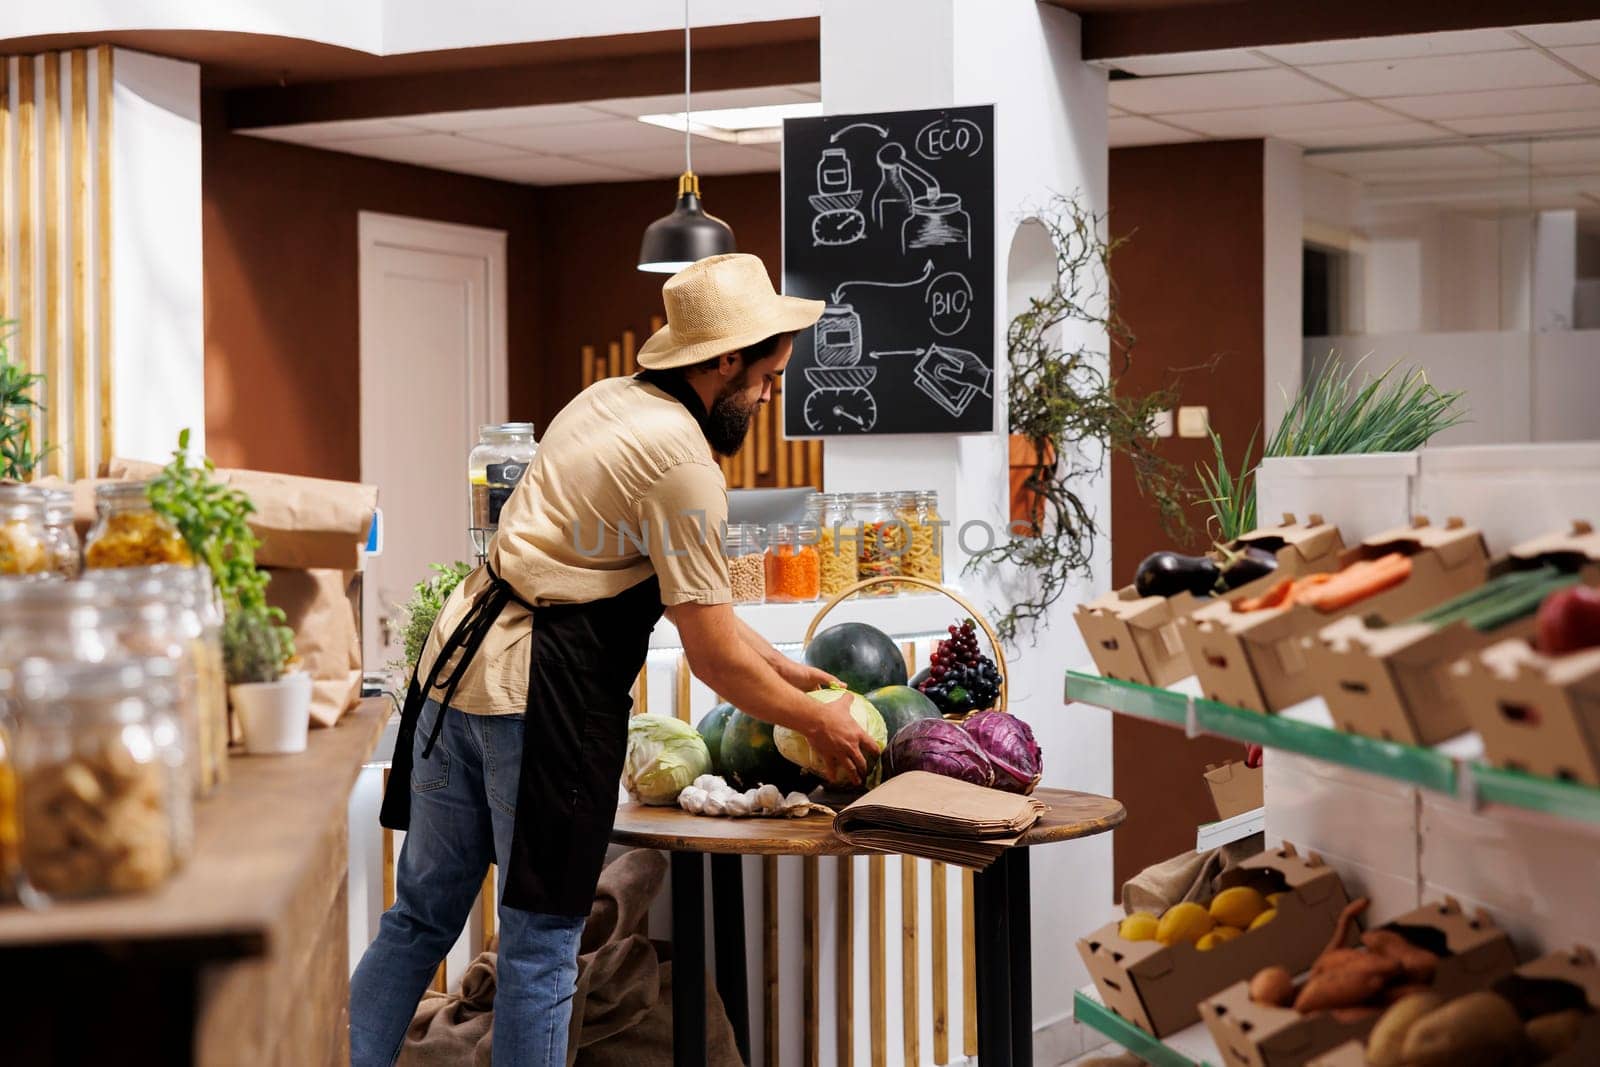 Man sells groceries in zero waste shop by DCStudio